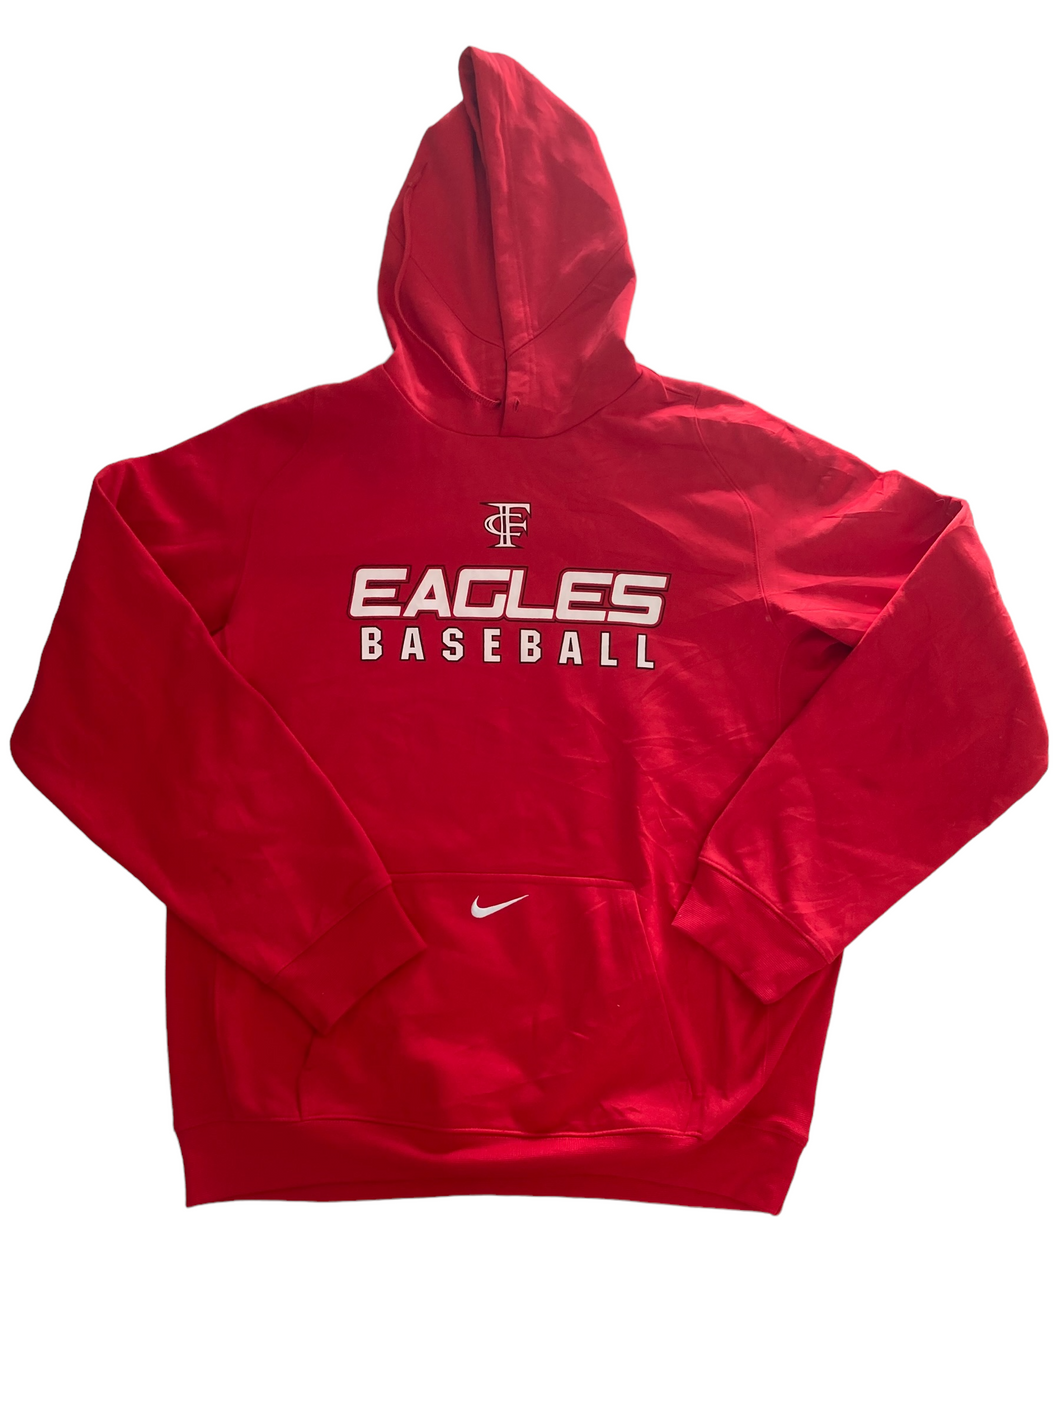 CF nike eagles baseball hoodie